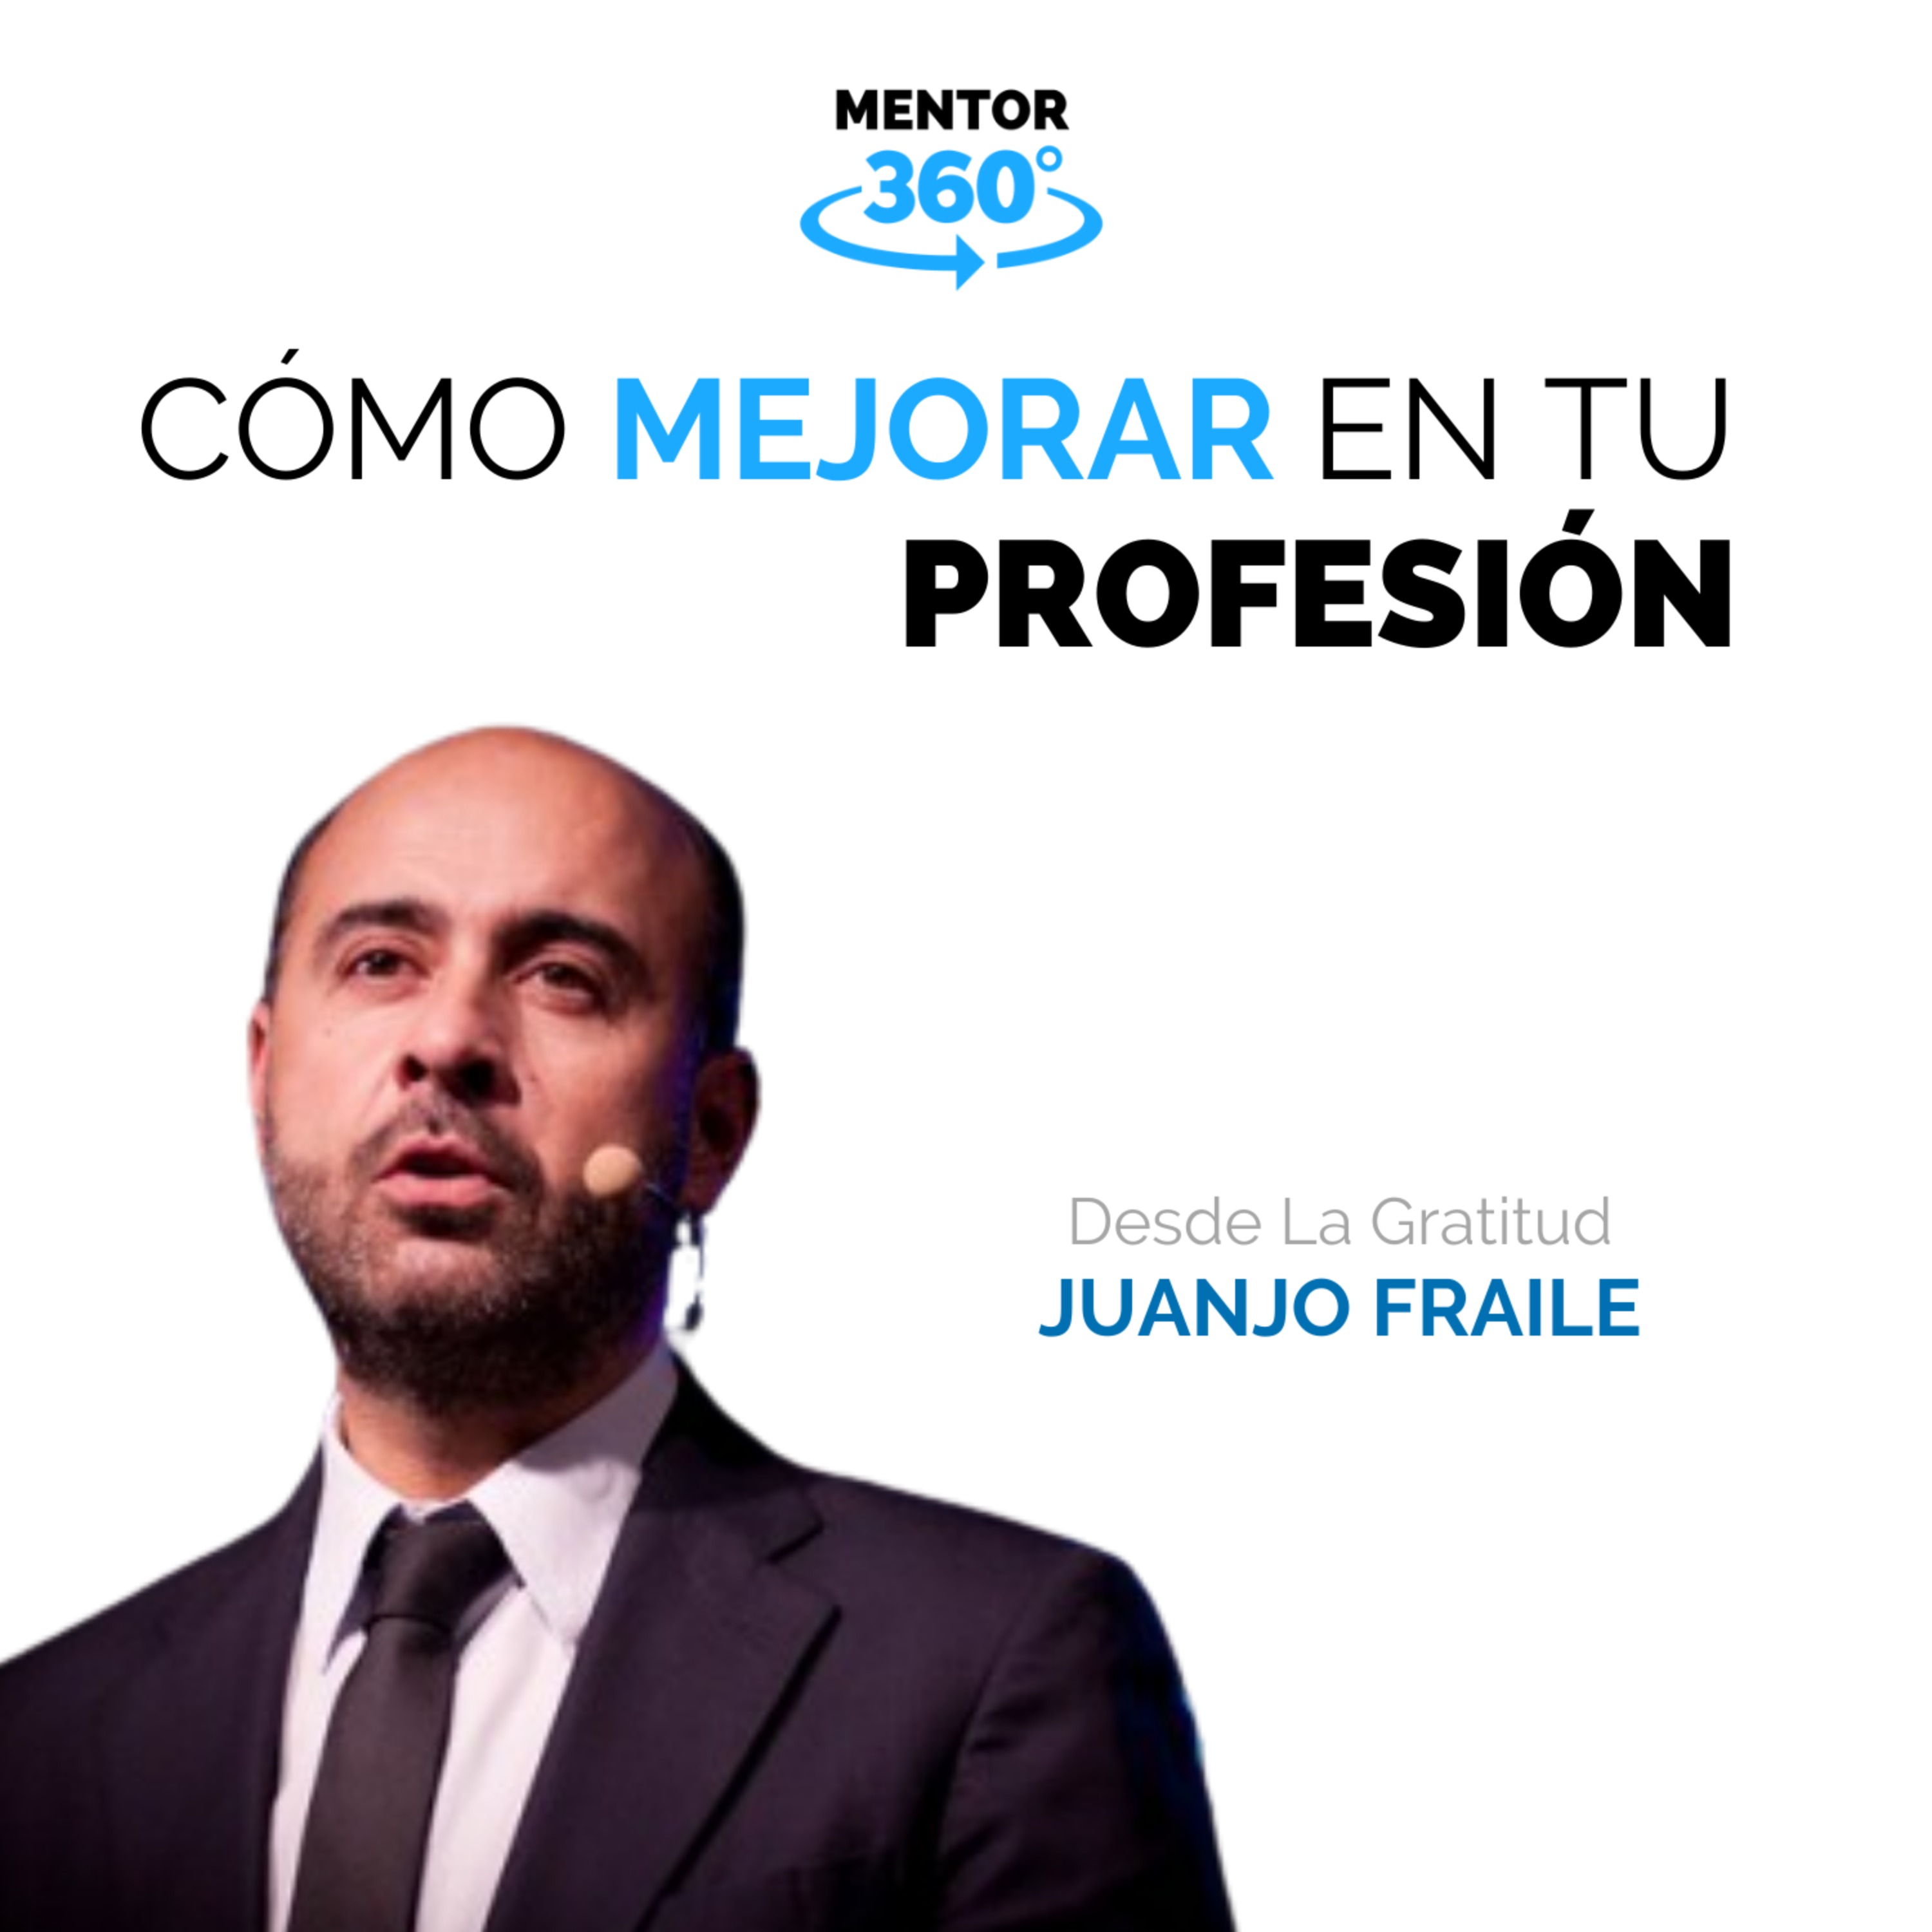 Cómo Mejorar En Tu Profesión - Desde La Gratitud - Juanjo Fraile - MENTOR360